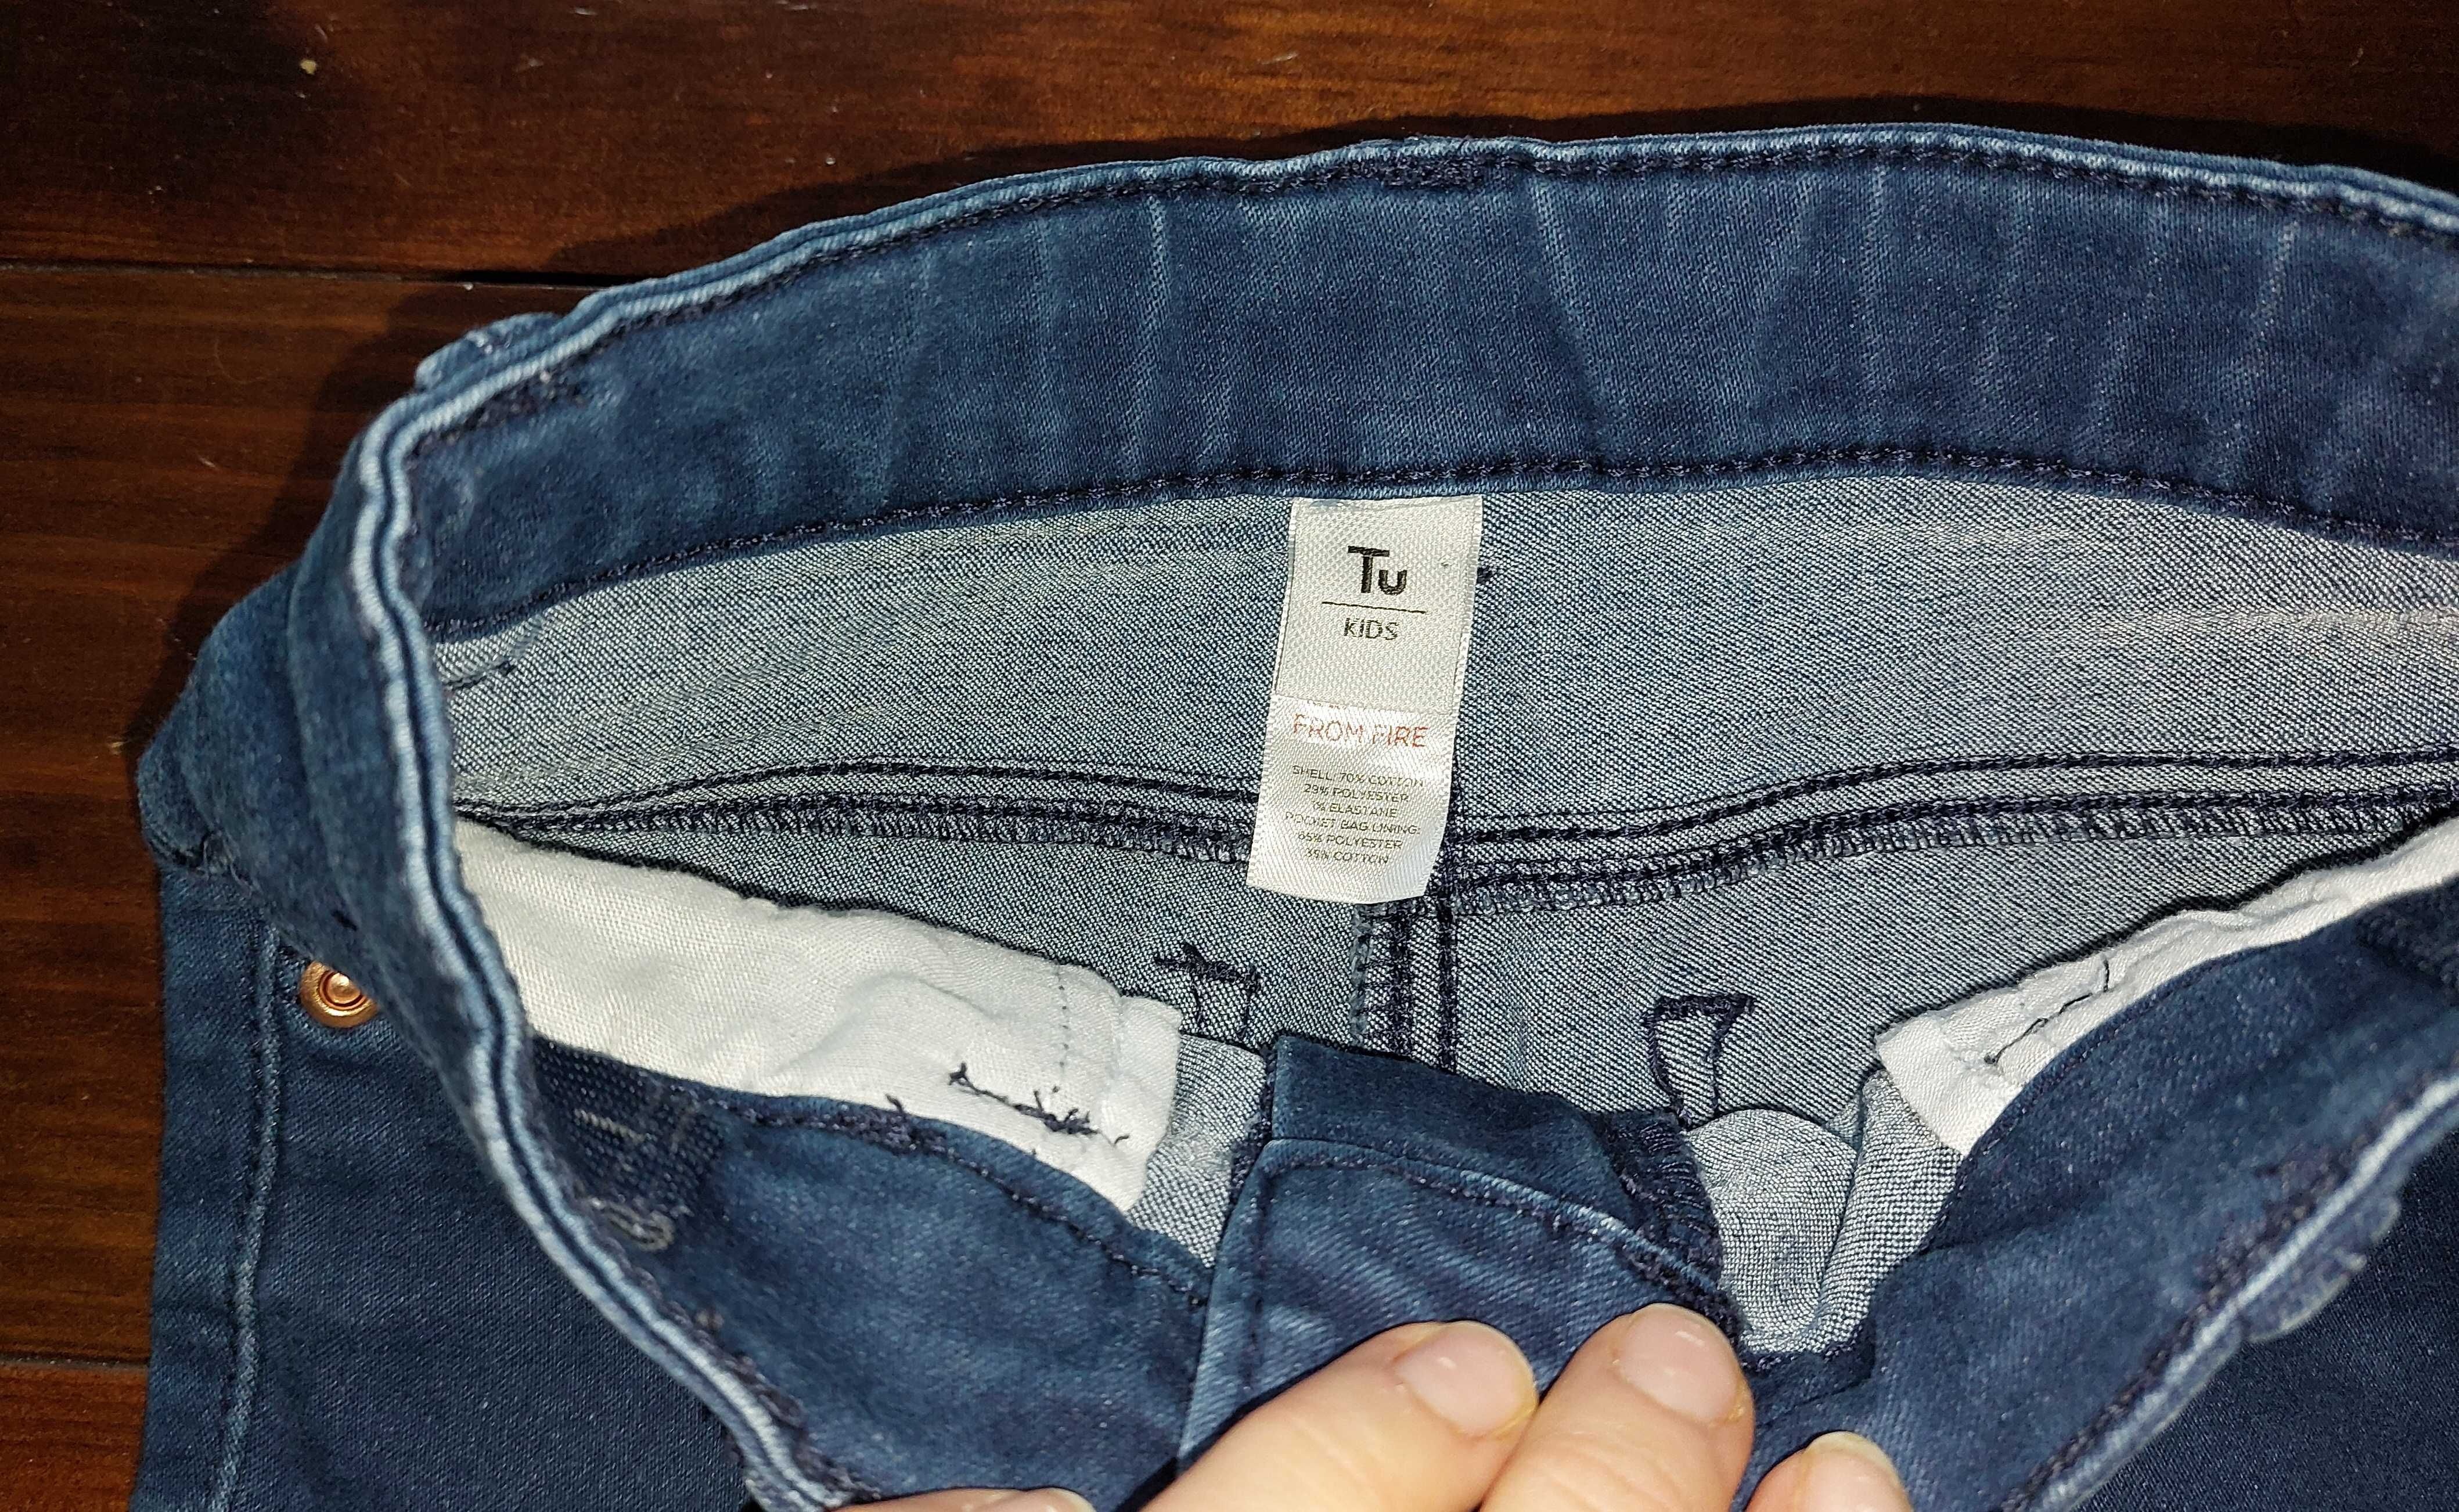 TU, Spodnie jeansowe dla dziewczynki, rurki, rozmiar 128